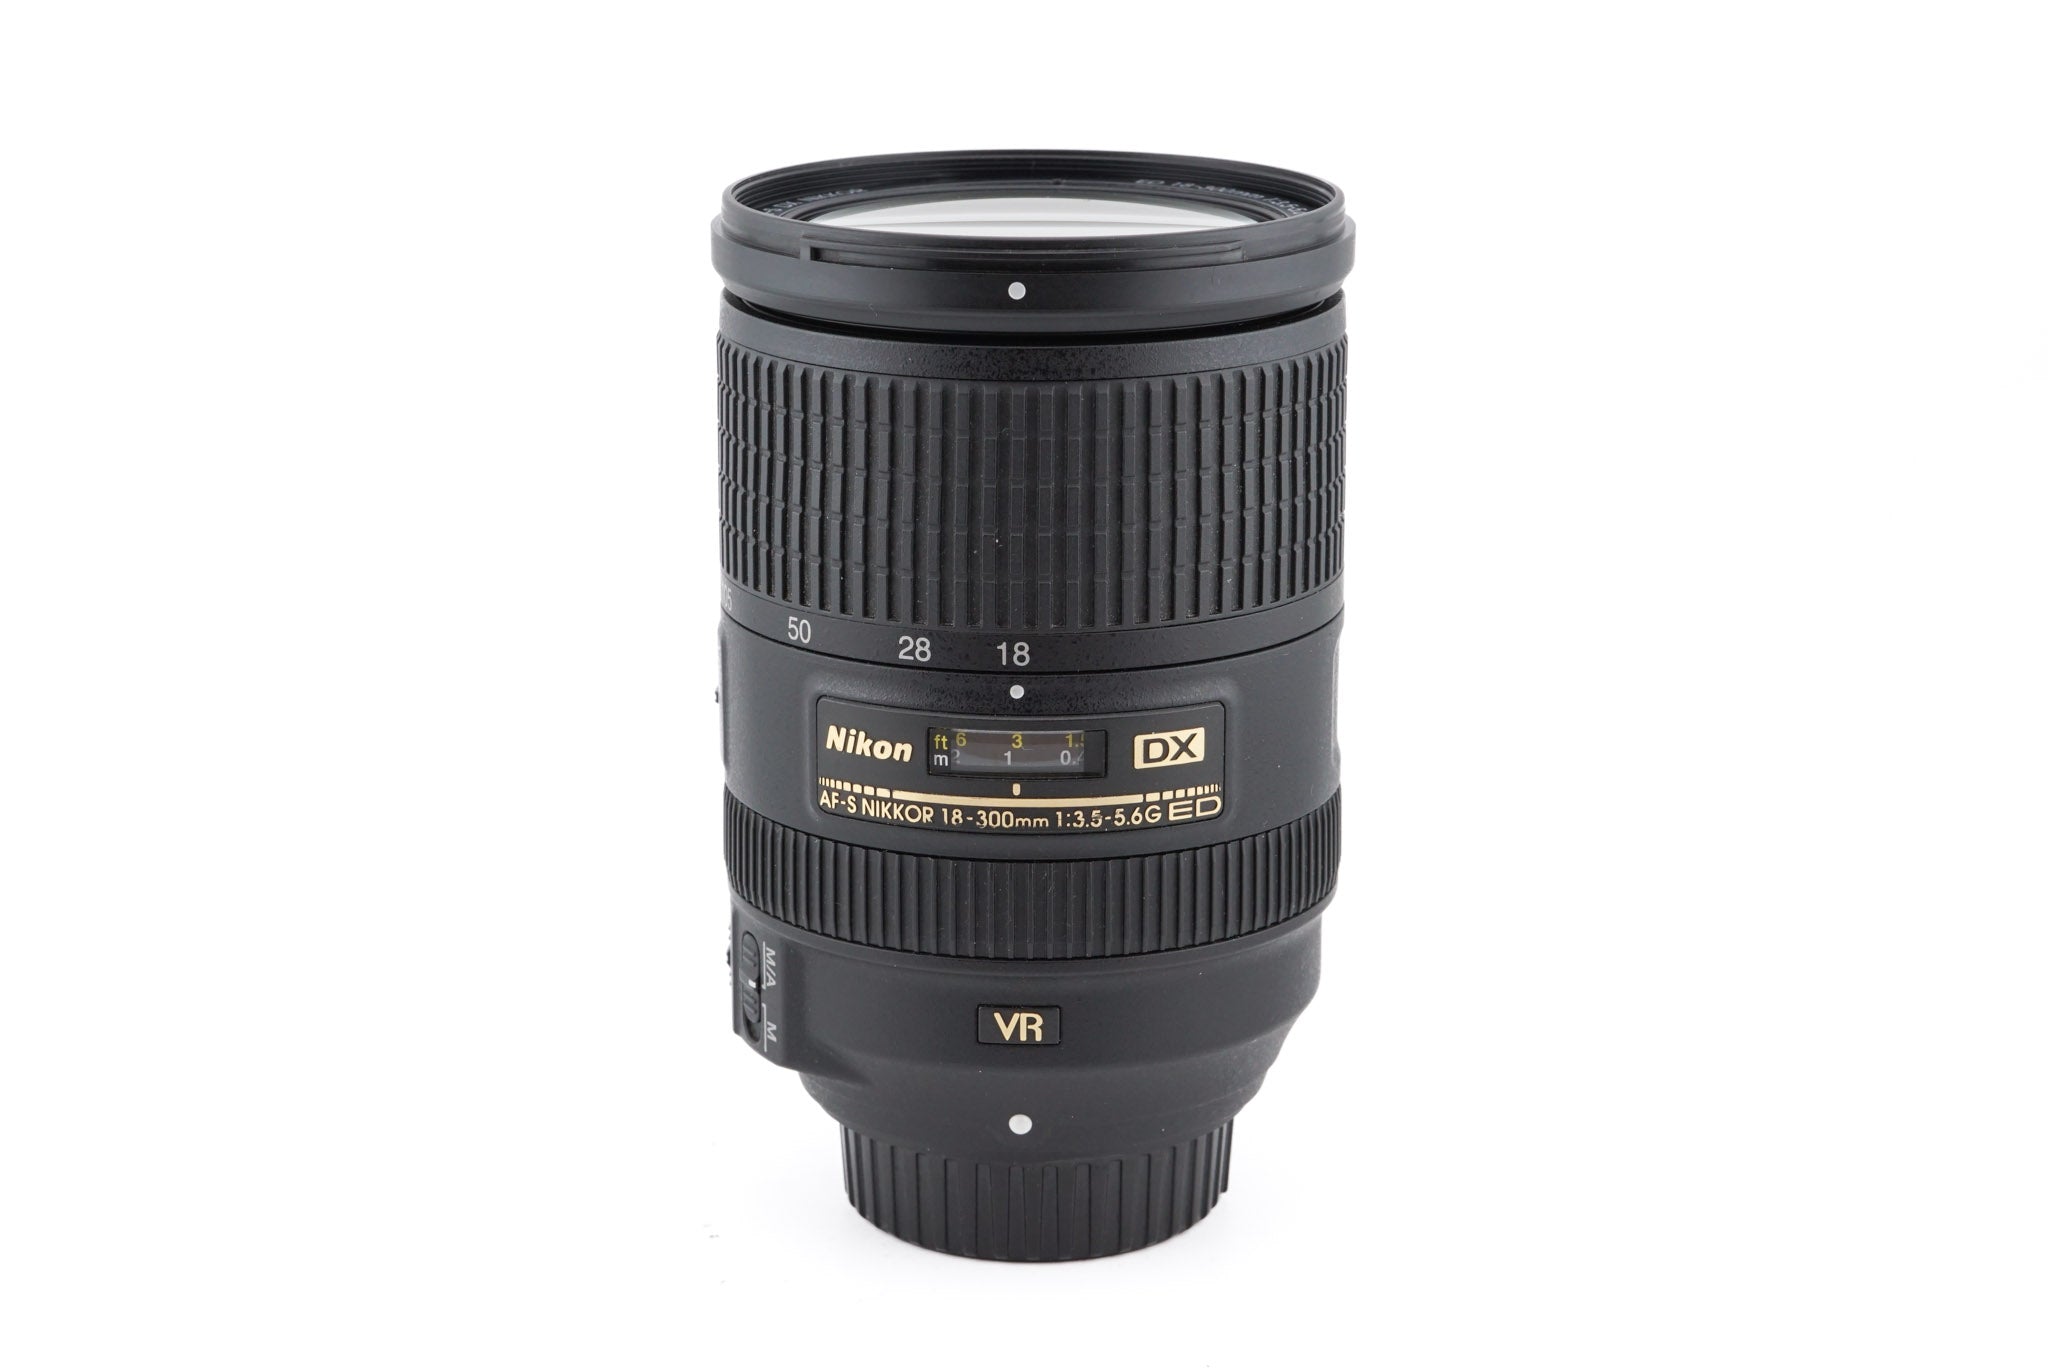 Nikon 18-300mm f3.5-5.6 AF-S Nikkor G Aspherical ED IF DX VR